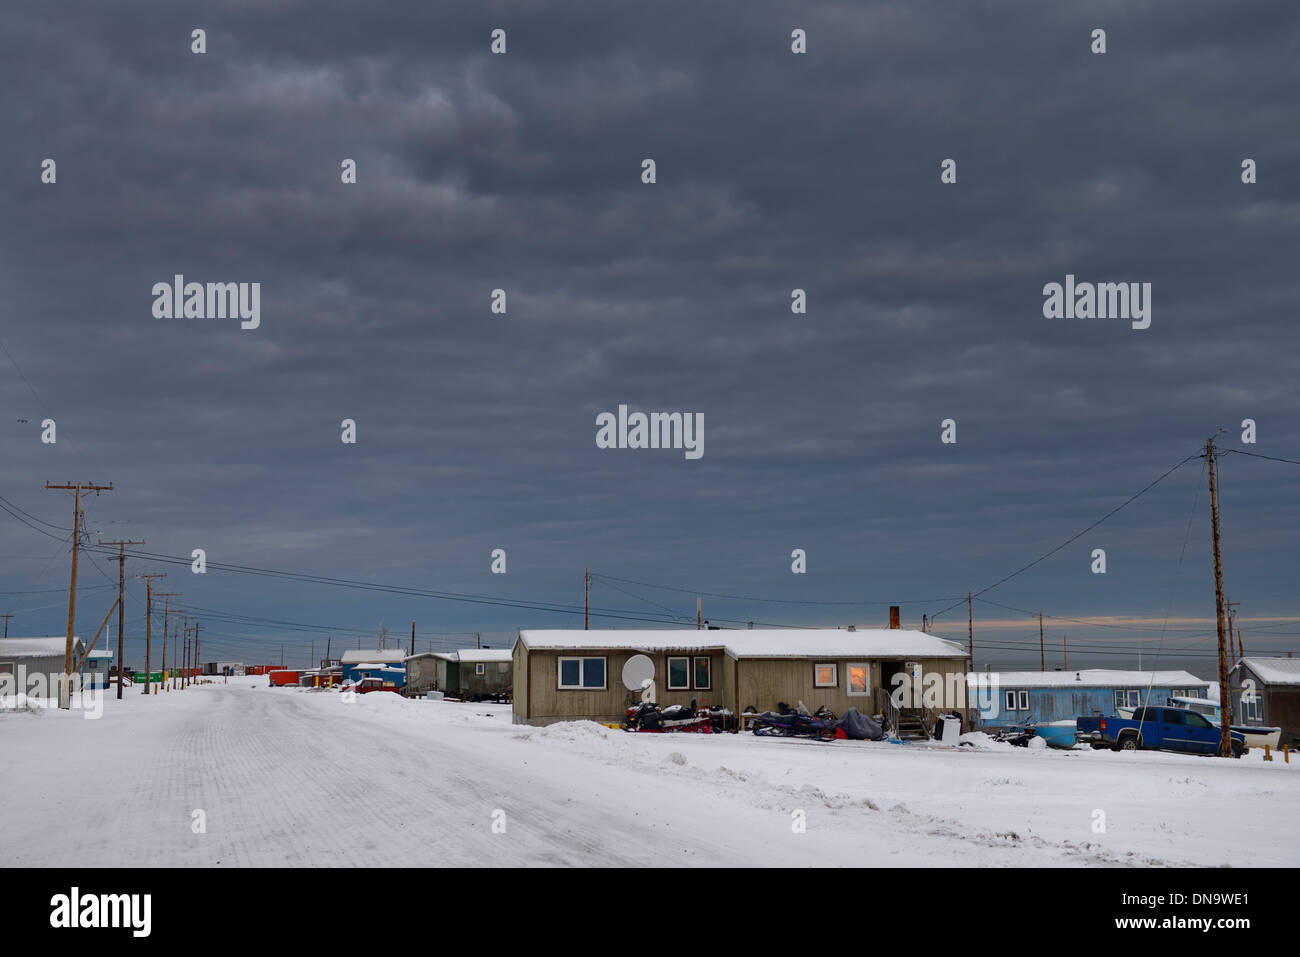 Sombres nuages sur village esquimau de l'Alaska États-unis Kaktovik sur l'océan Arctique de la mer de Beaufort Banque D'Images